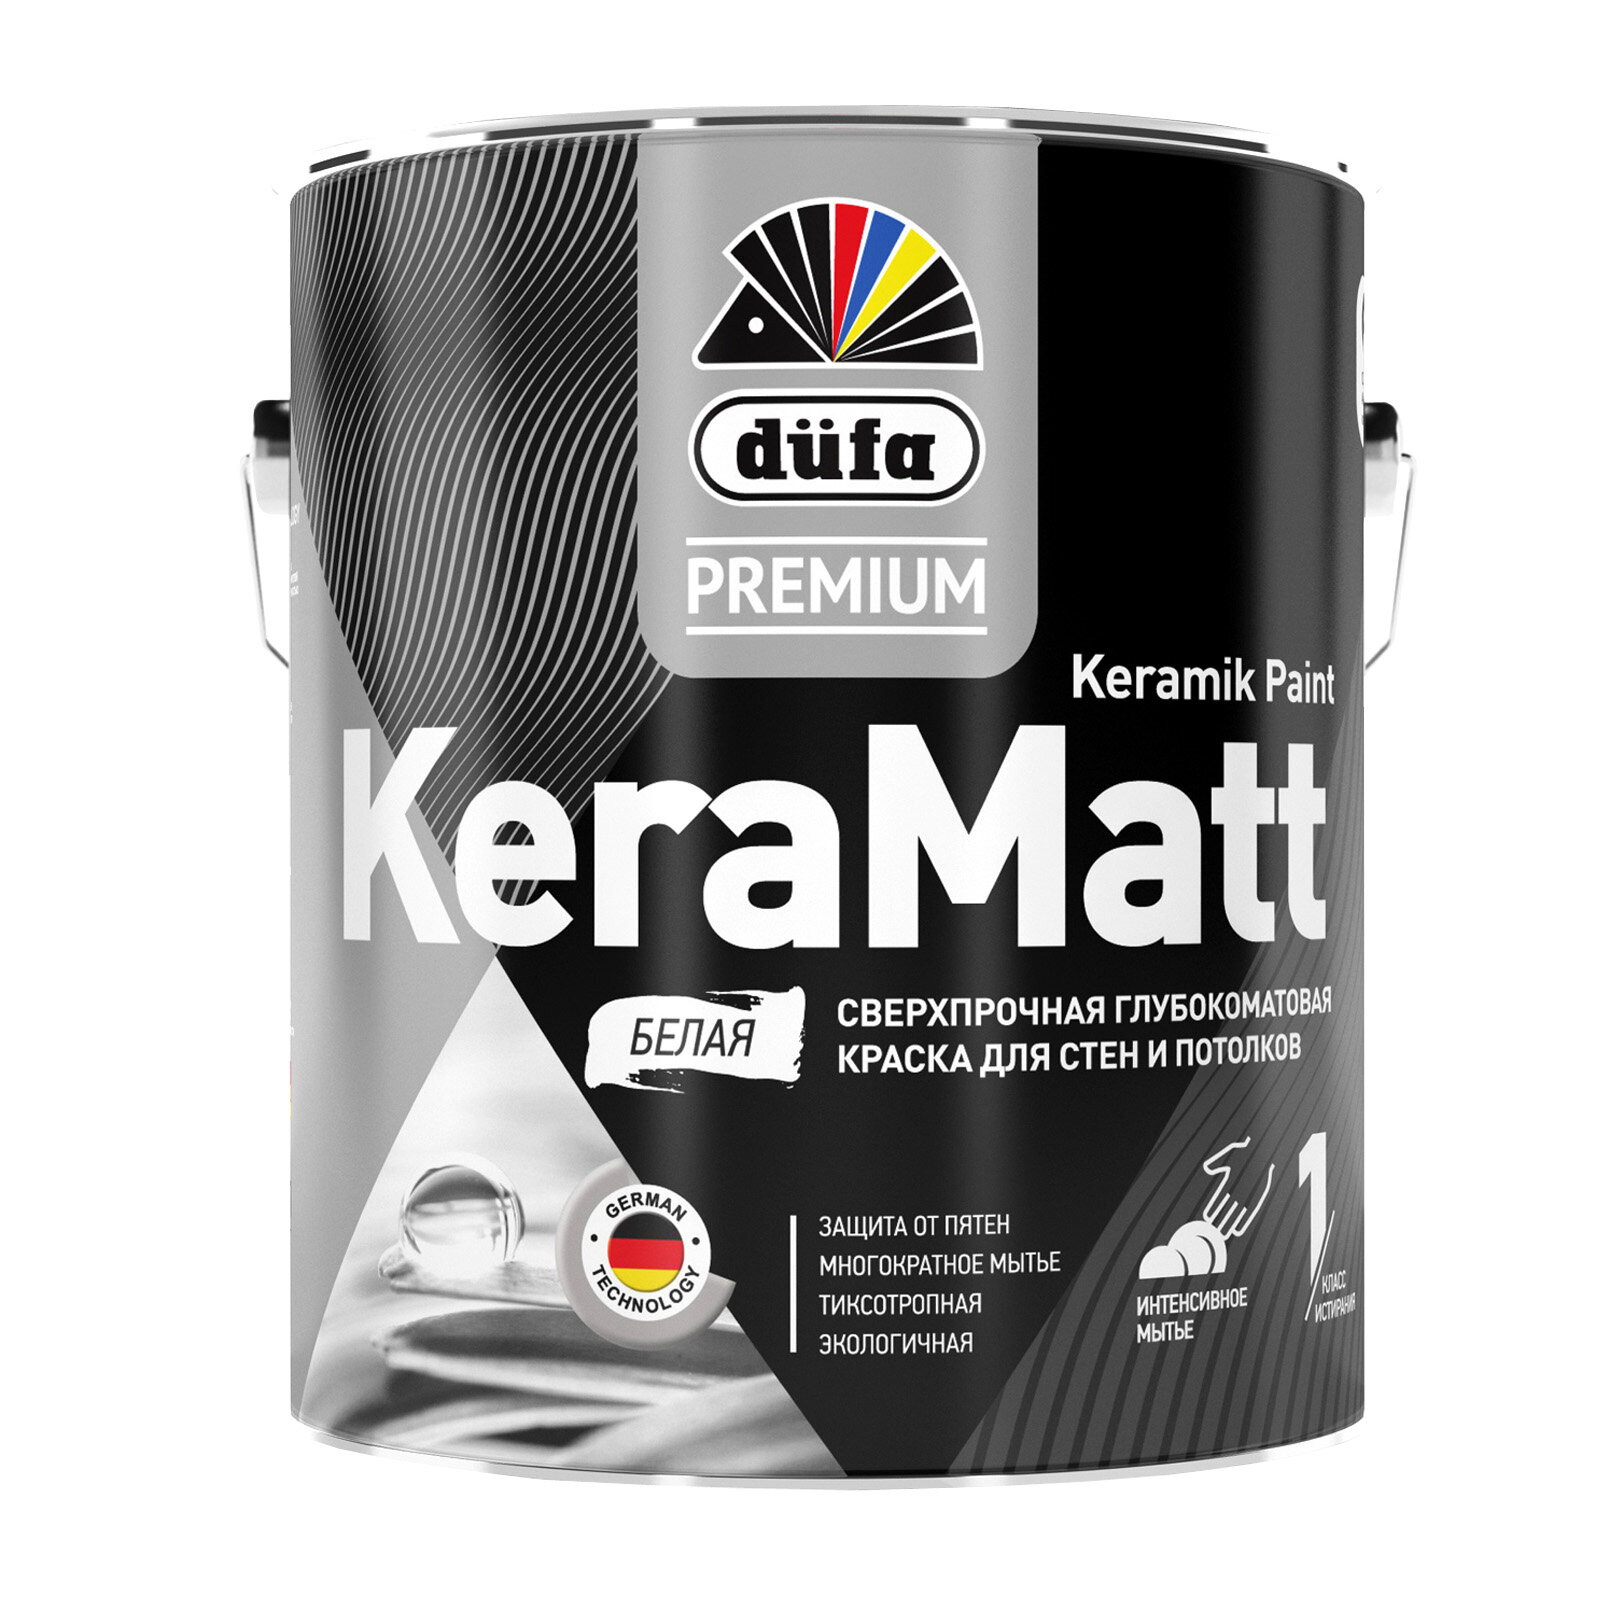 Краска для стен и потолков сверхпрочная Düfa Premium KeraMatt Keramik Paint глубокоматовая база 1 0,9 л